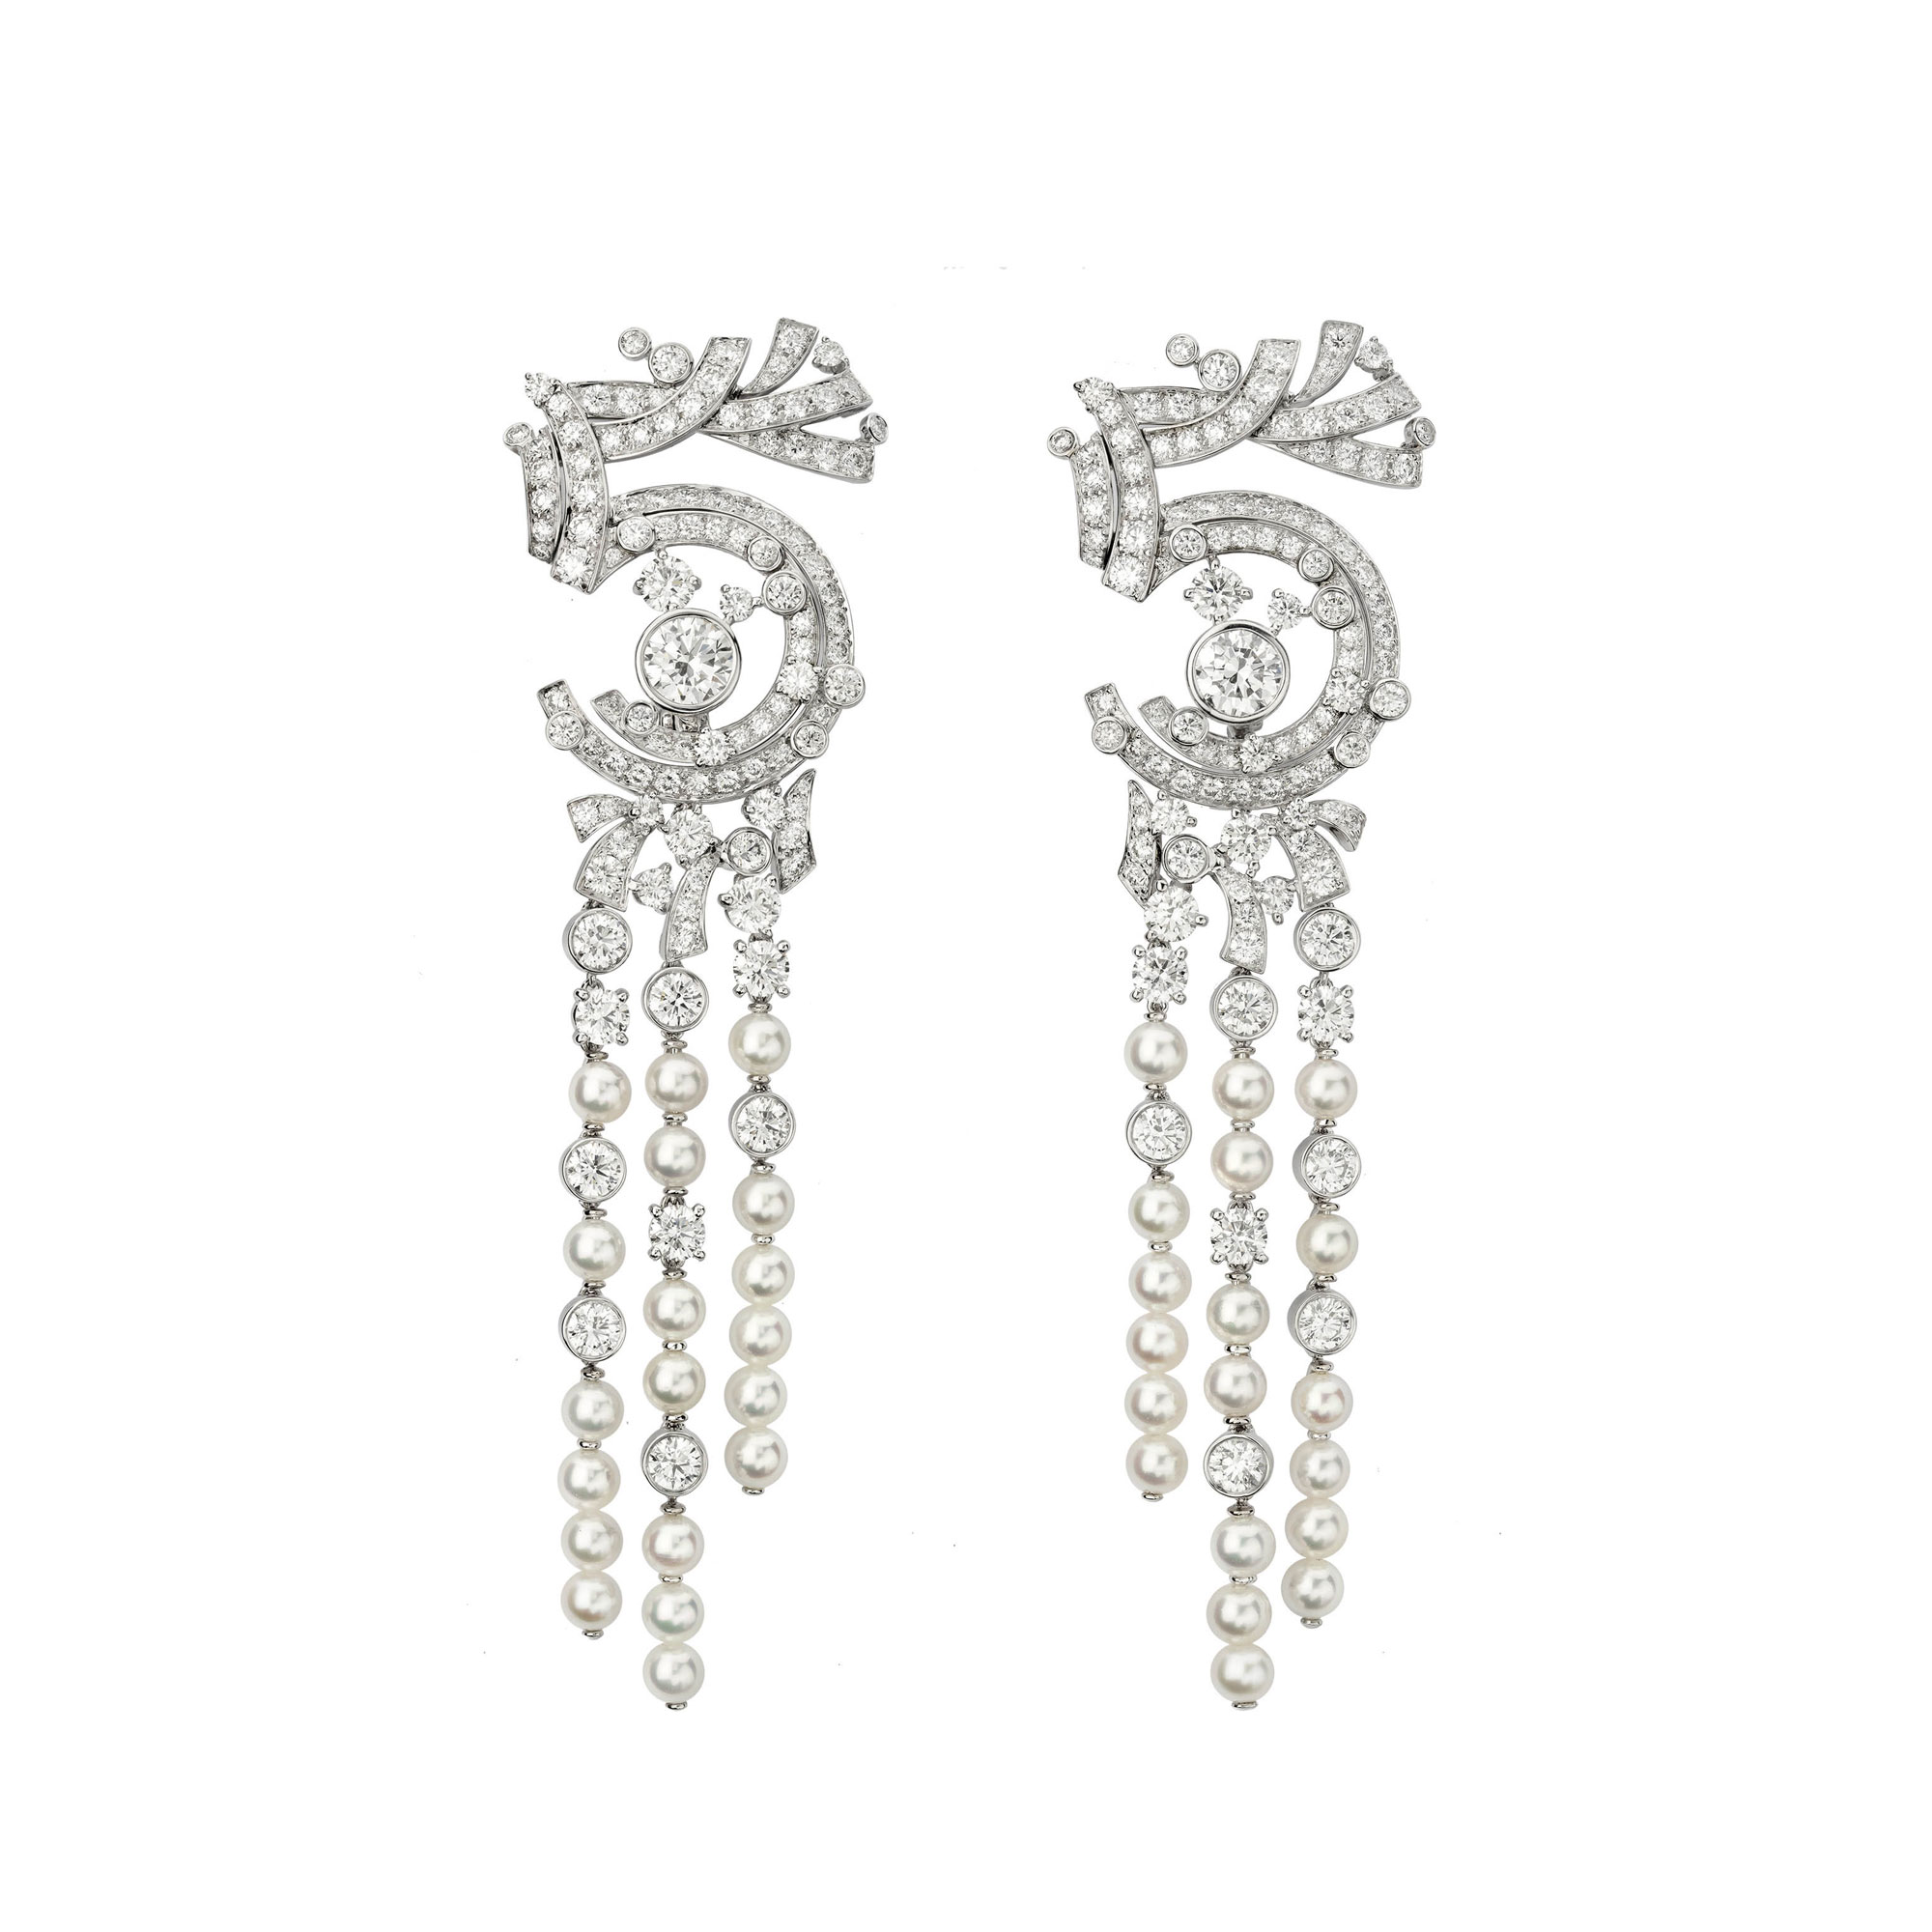 Collection N°5, Chanel High Jewelry. Bracciale in parure in oro bianco e diamanti